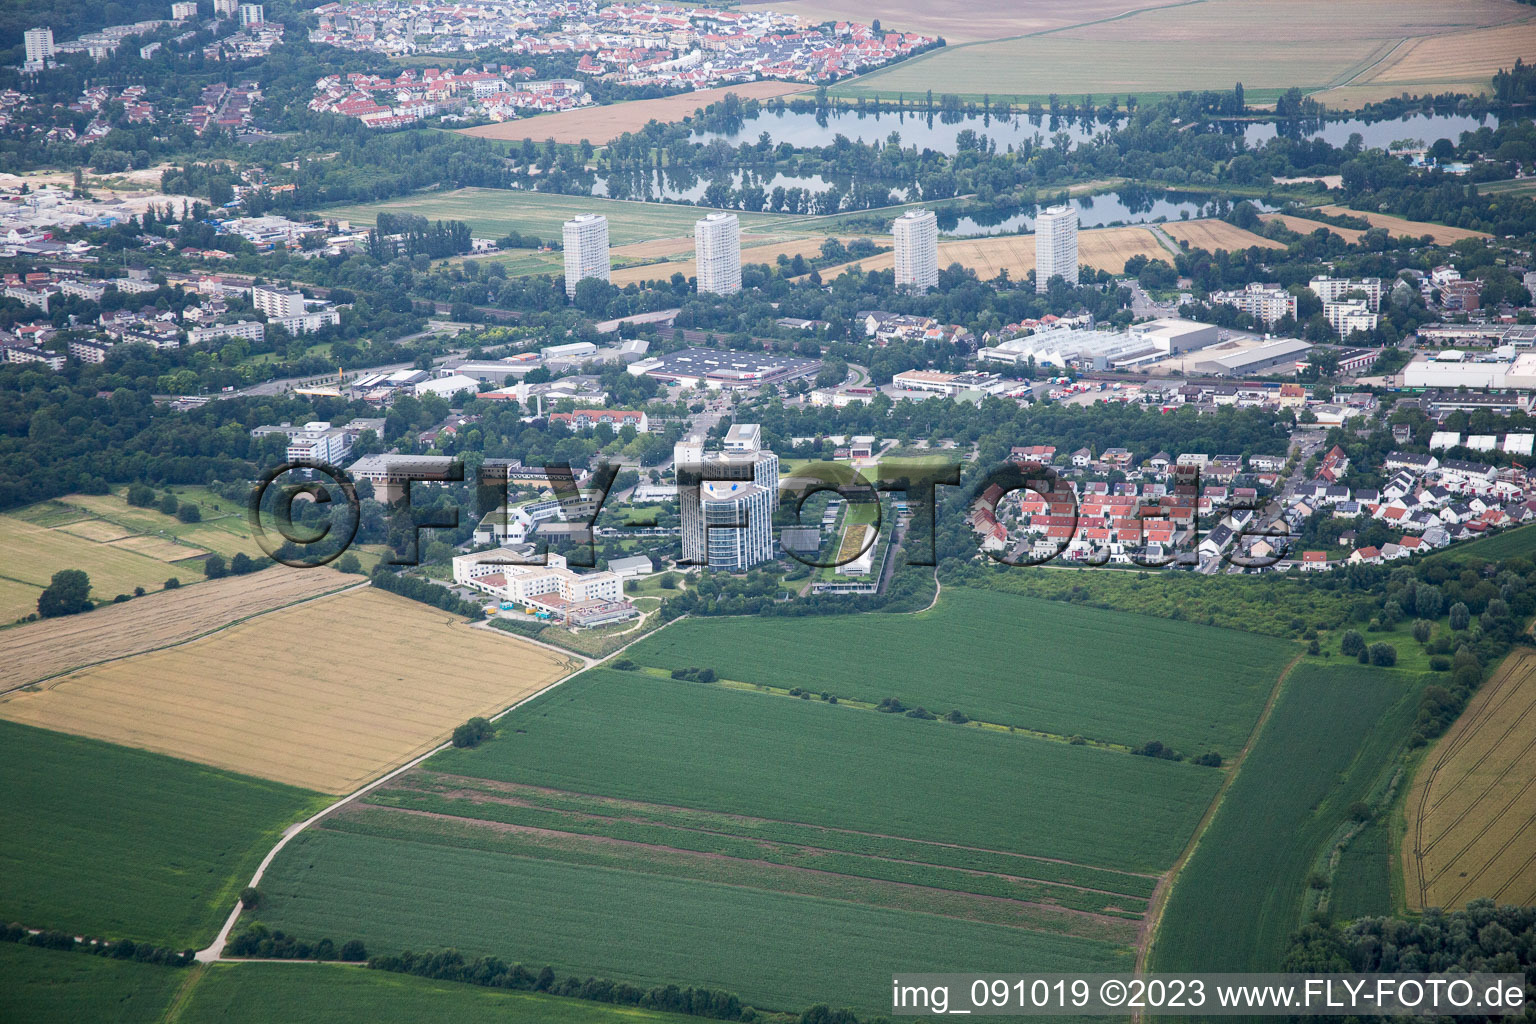 Luftbild von Ortsteil Oggersheim in Ludwigshafen am Rhein im Bundesland Rheinland-Pfalz, Deutschland